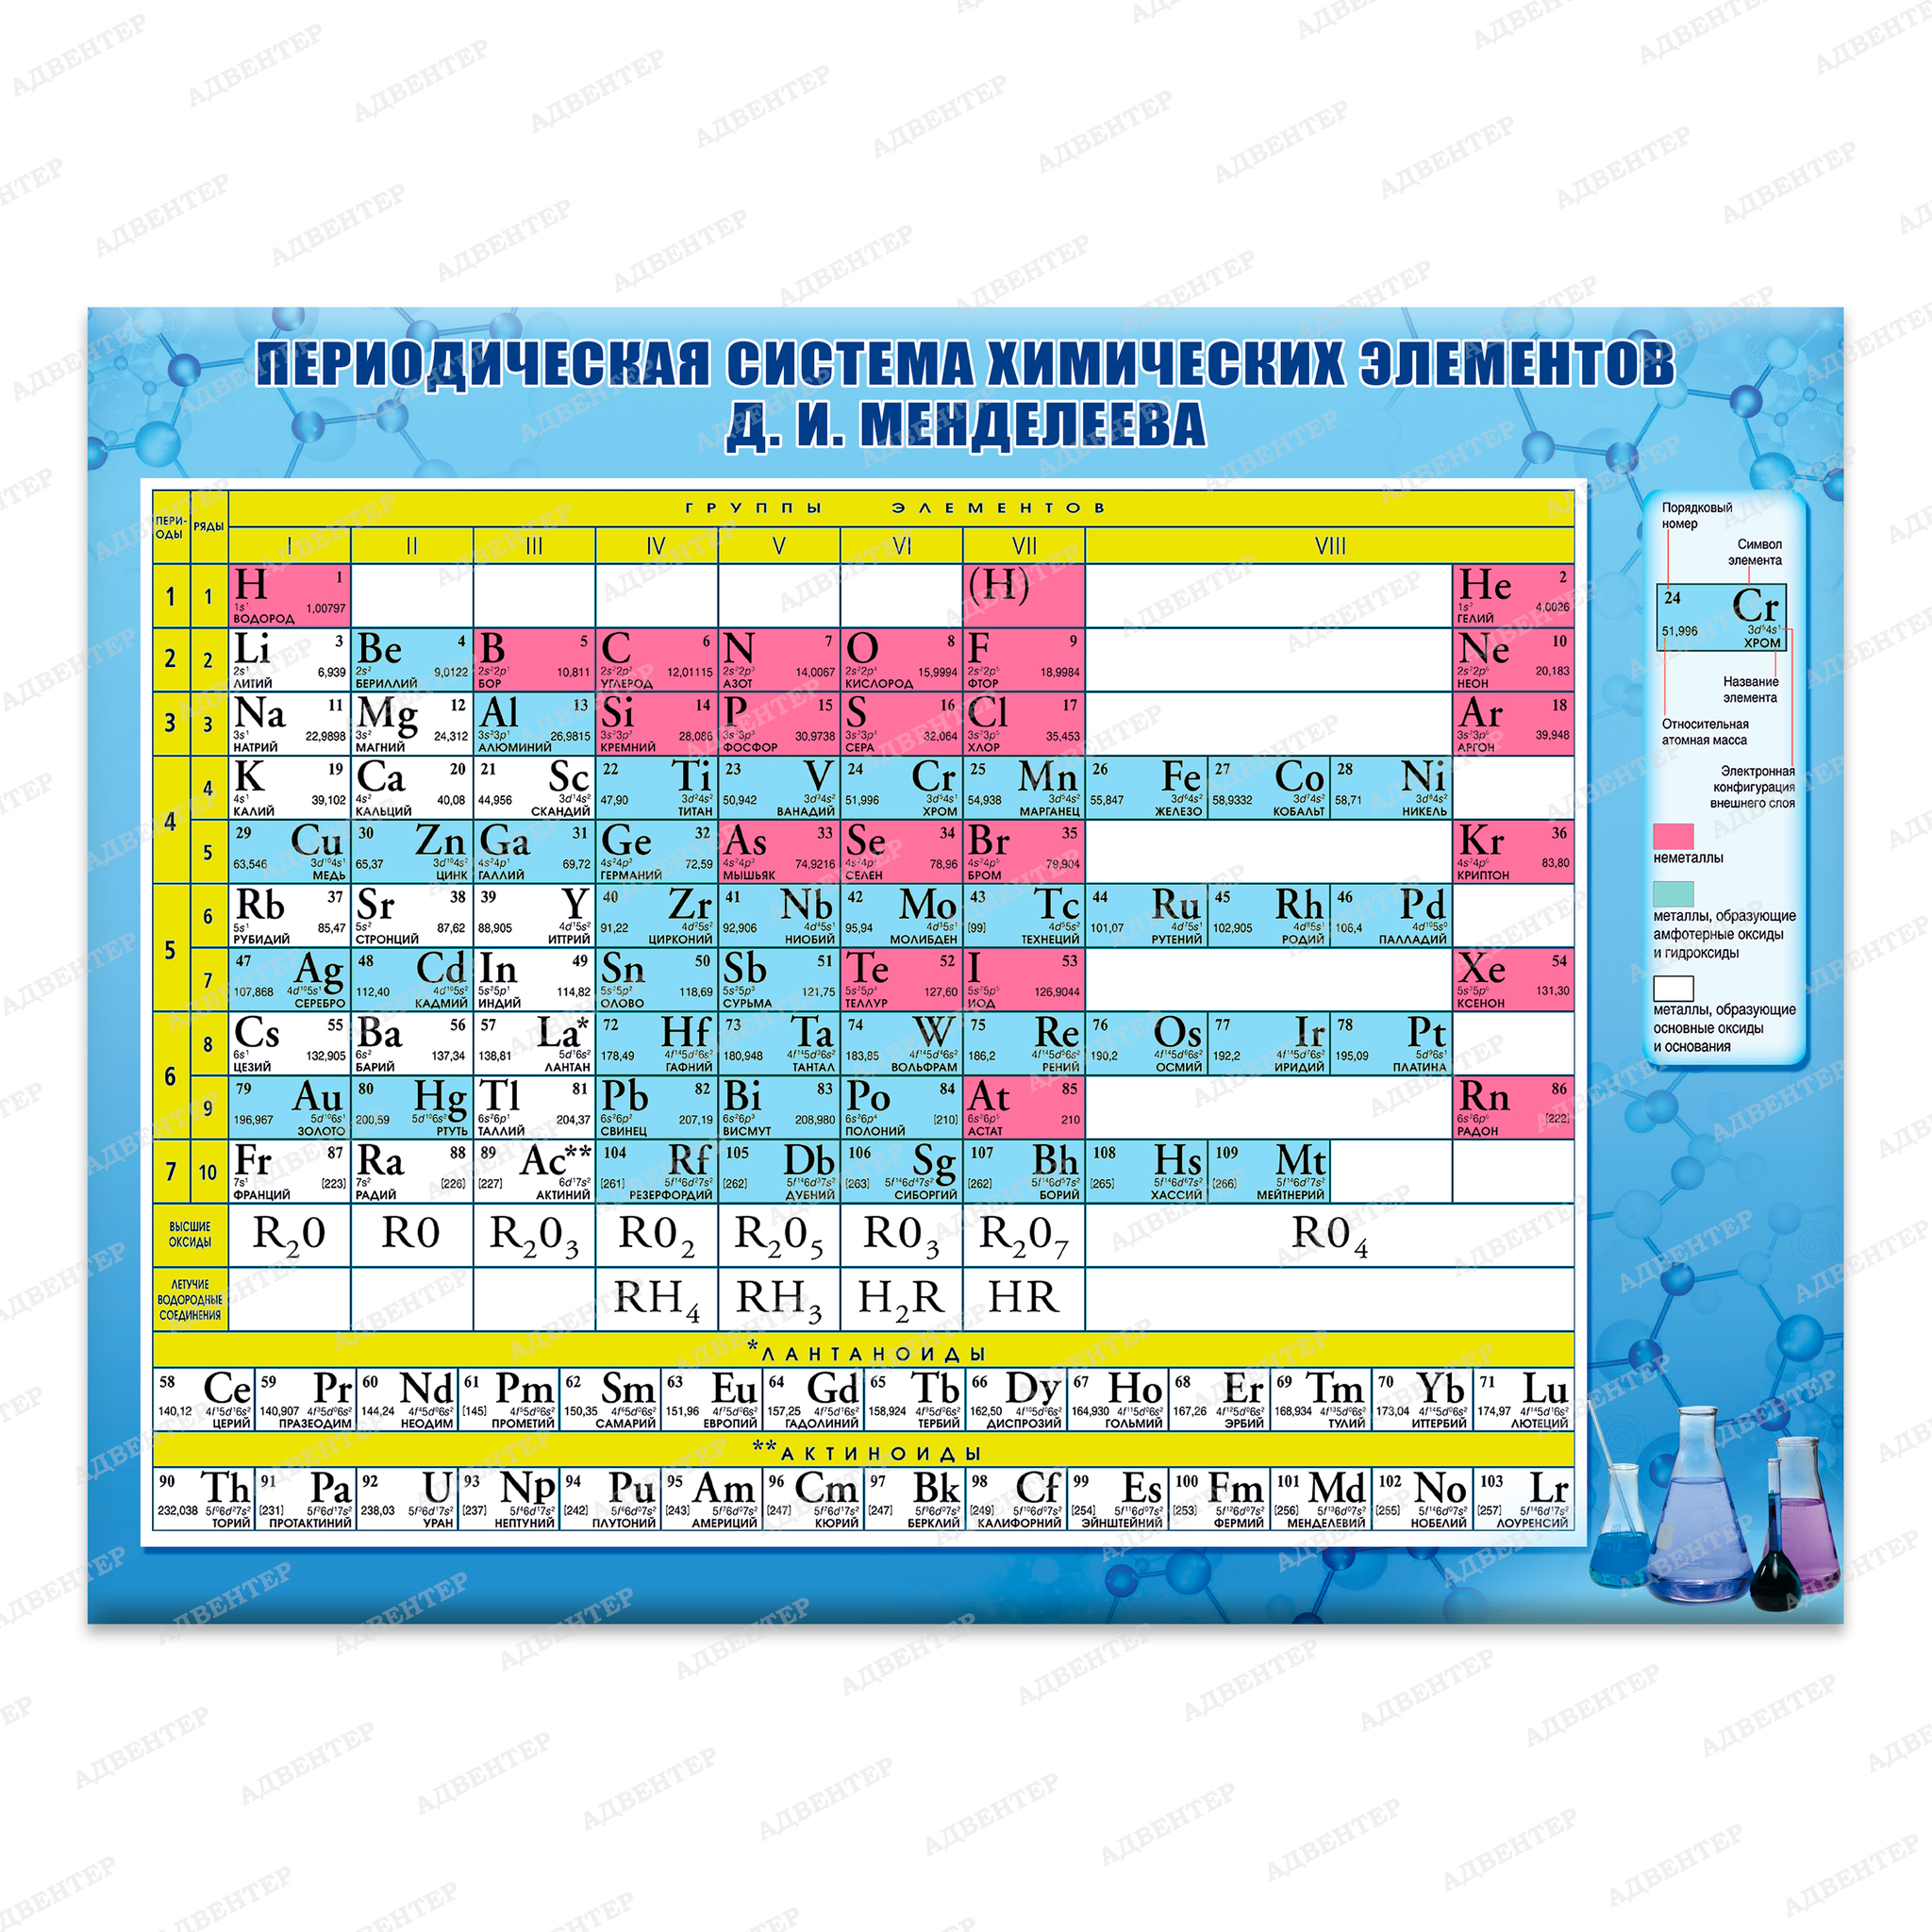 Какой 5 элемент таблицы менделеева. Таблица по химии периодическая система химических элементов. Периодическая система химических элементов Менделеева химия 8 класс. Периодическая таблица химических элементов Менделеева 9 класс. Таблица Менделеева по химии 8 класс химические элементы.